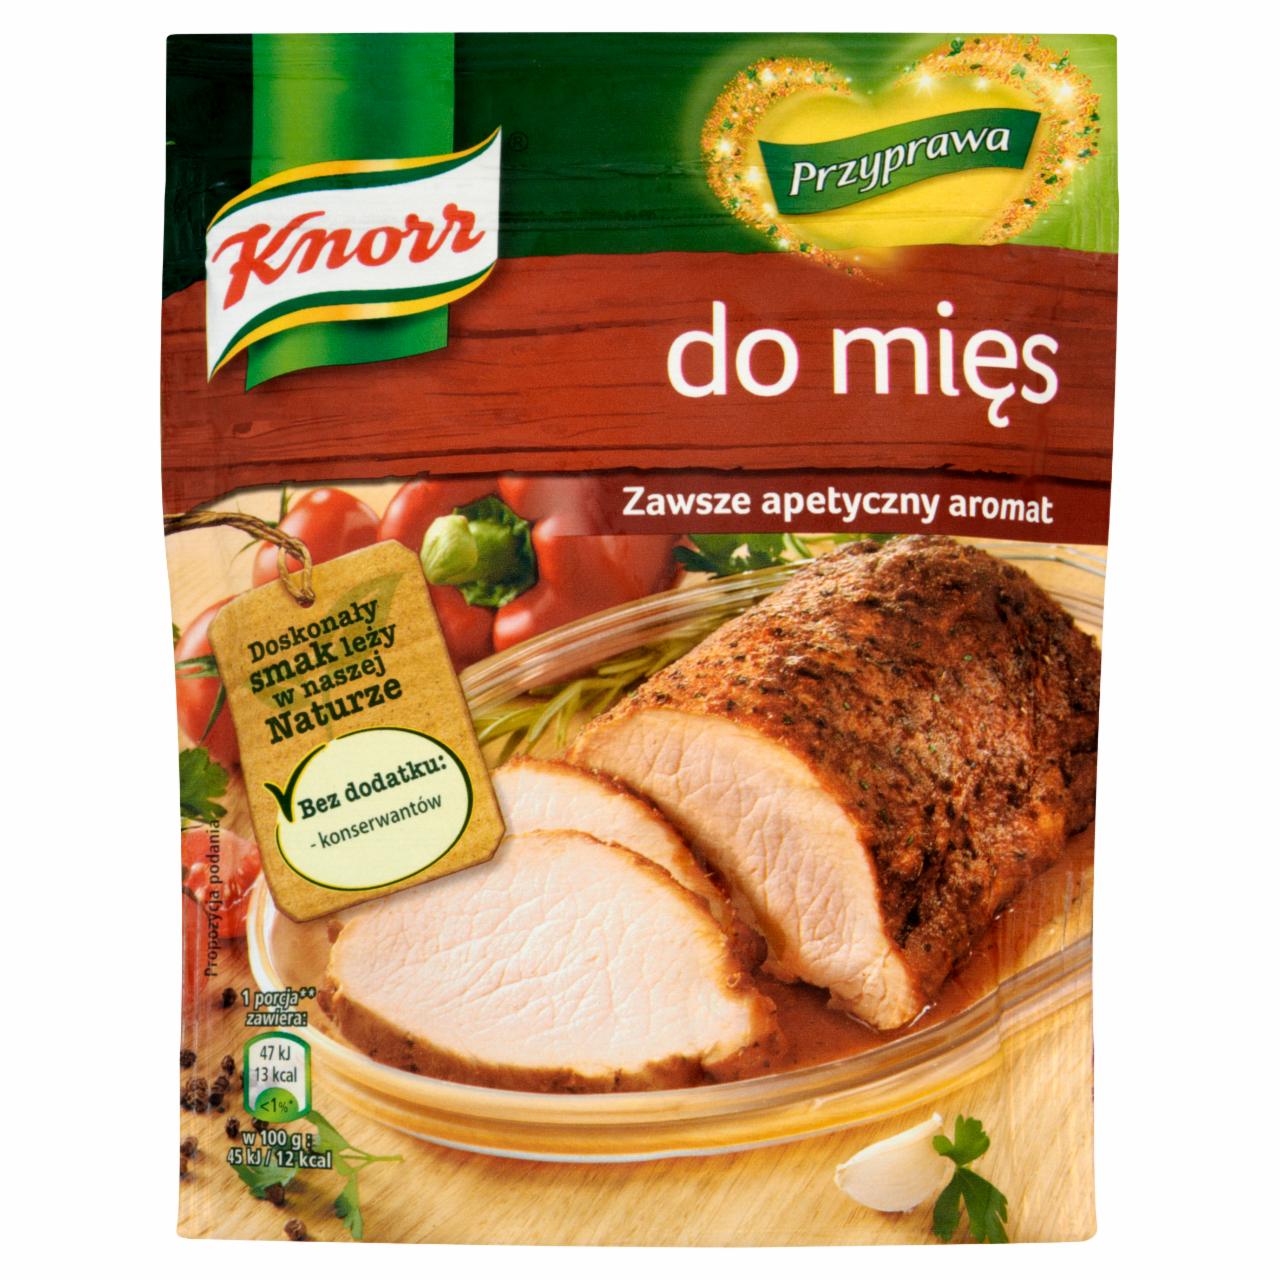 Zdjęcia - Knorr Przyprawa do mięs 200 g